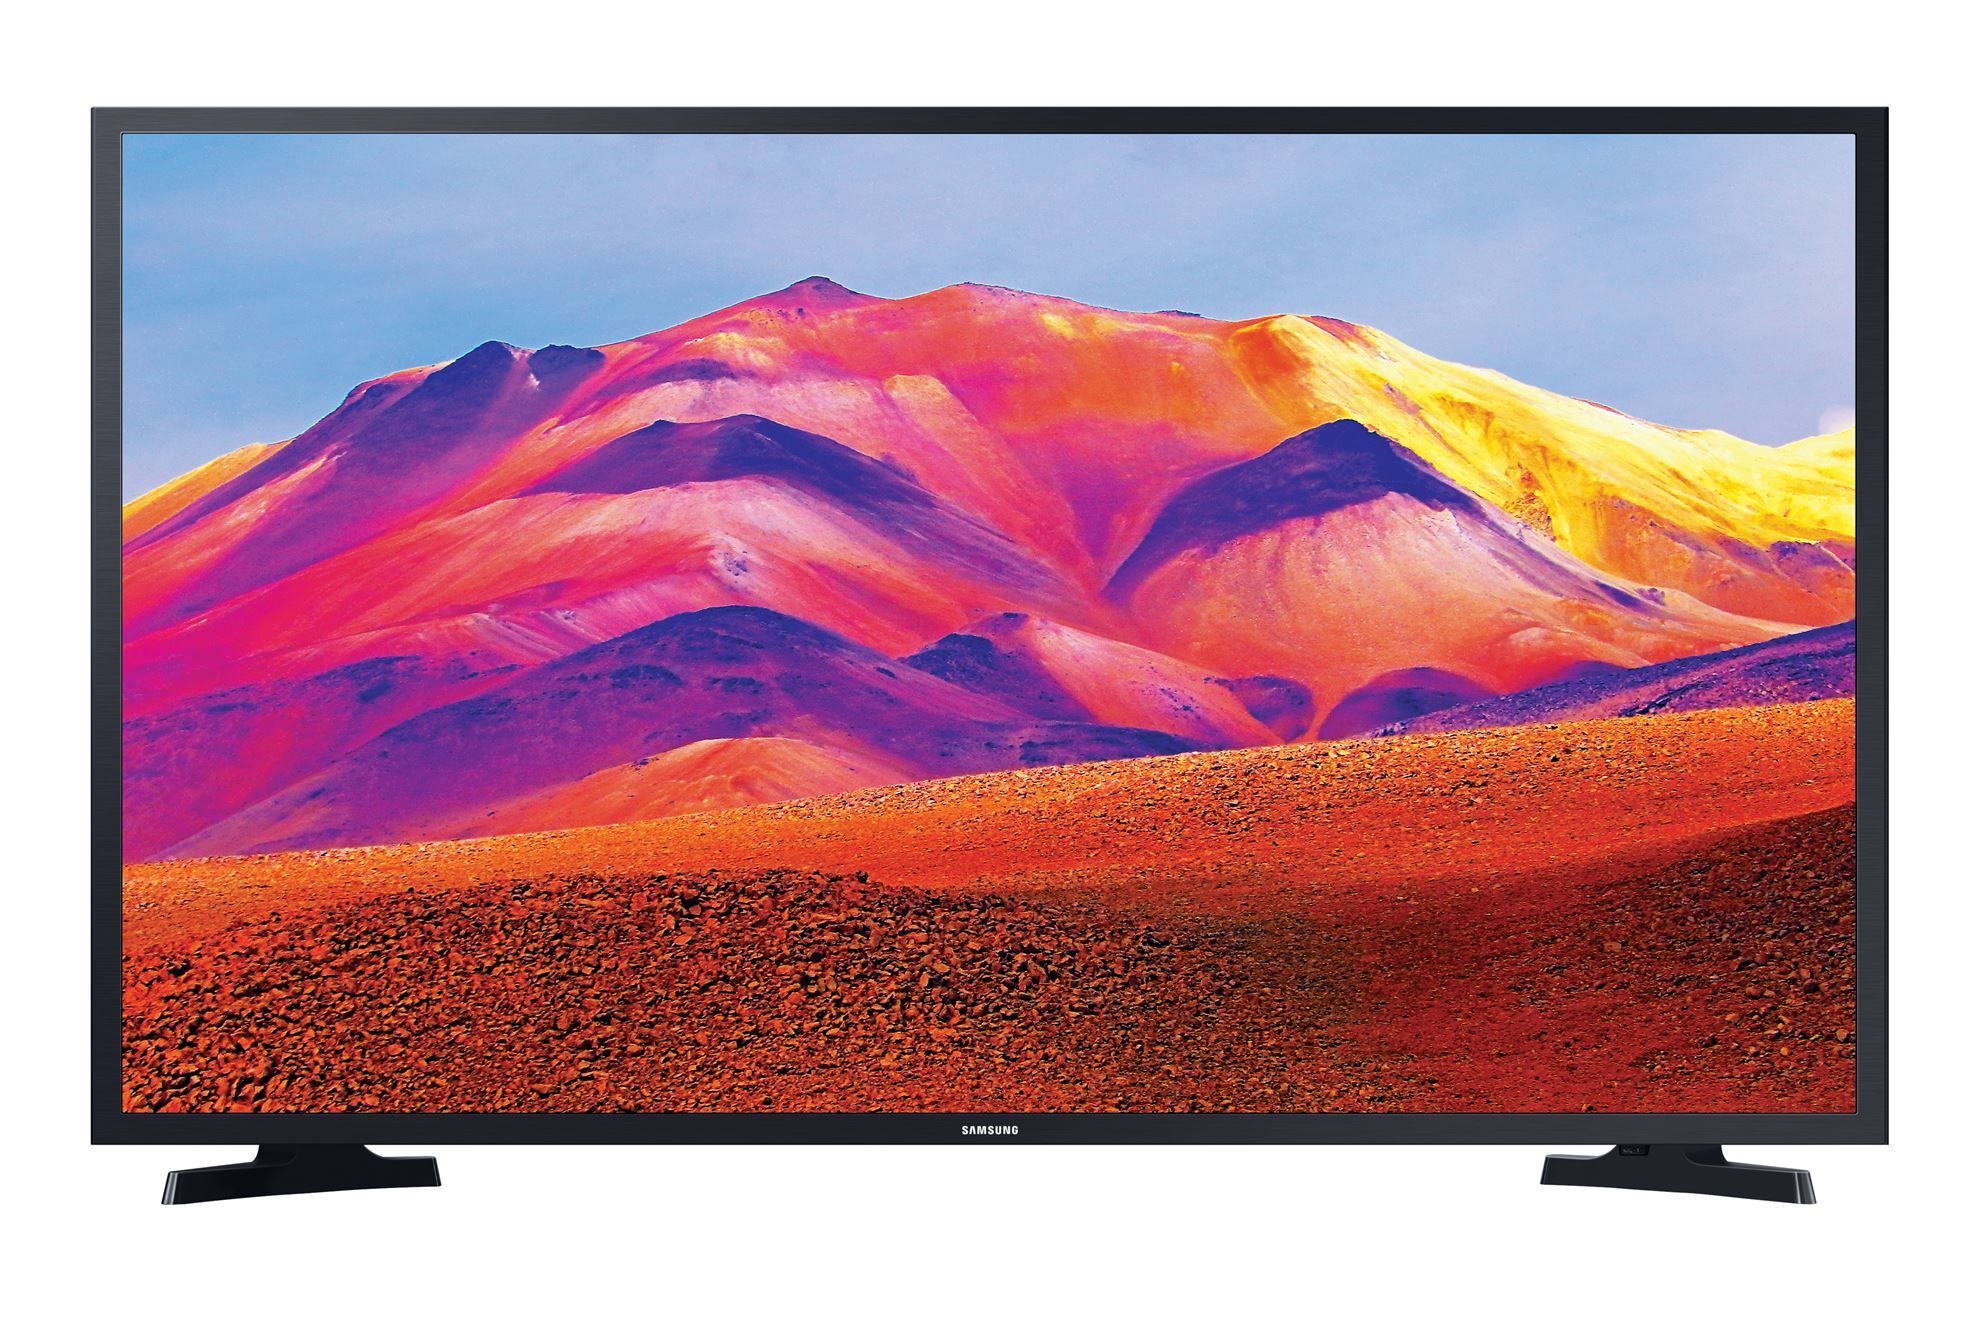 Samsung UE40T5300 40" Full HD Smart LED TV